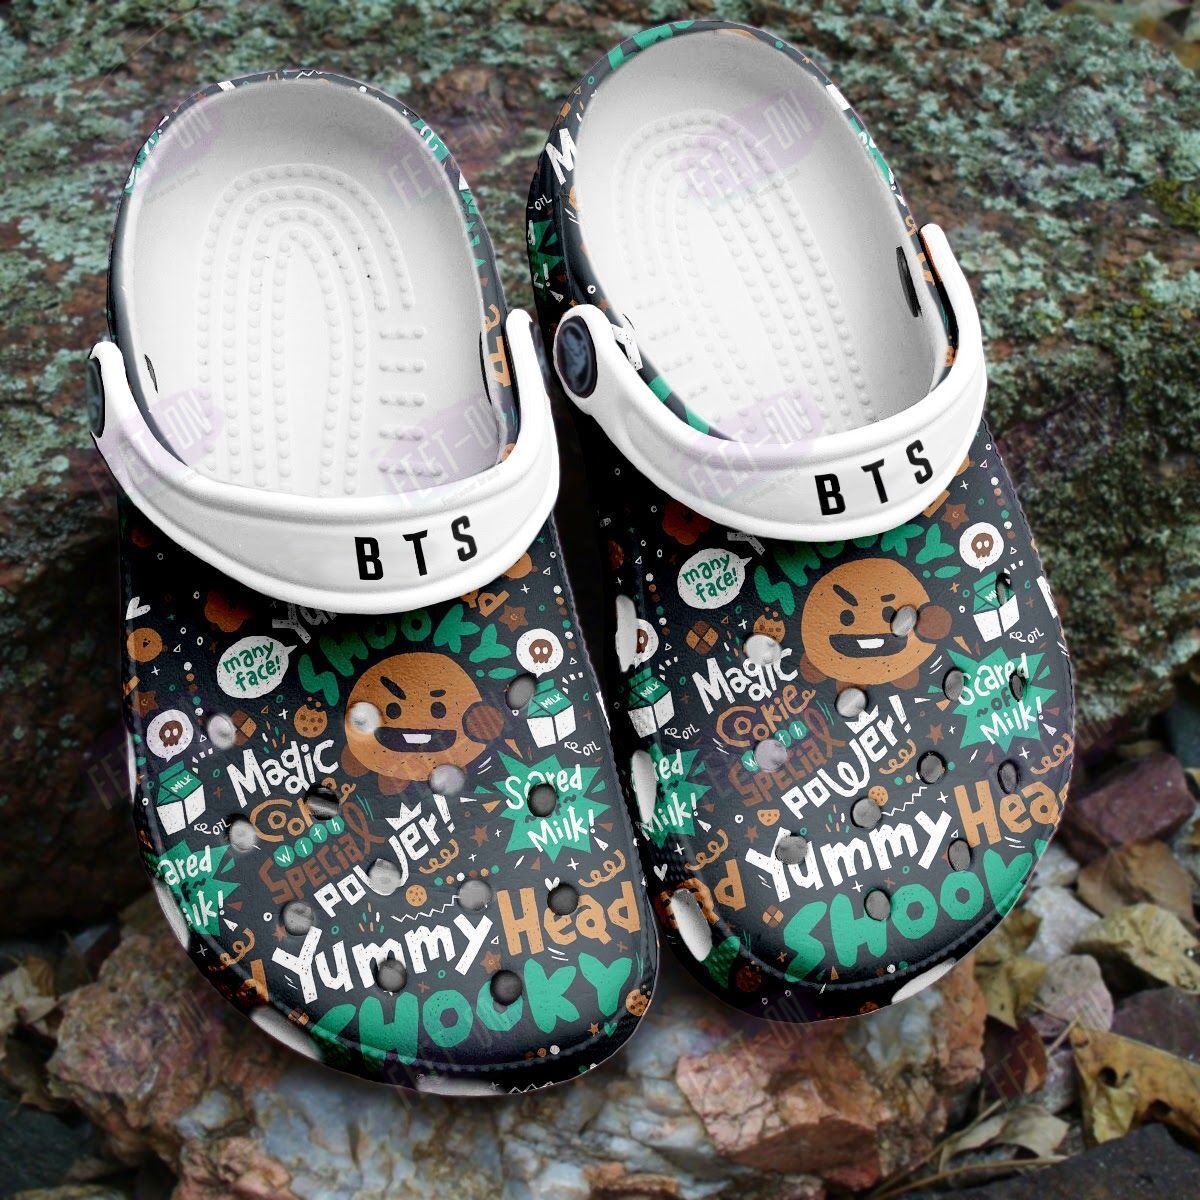 BEST Shooky BT21 BTS crocs crocband Shoes